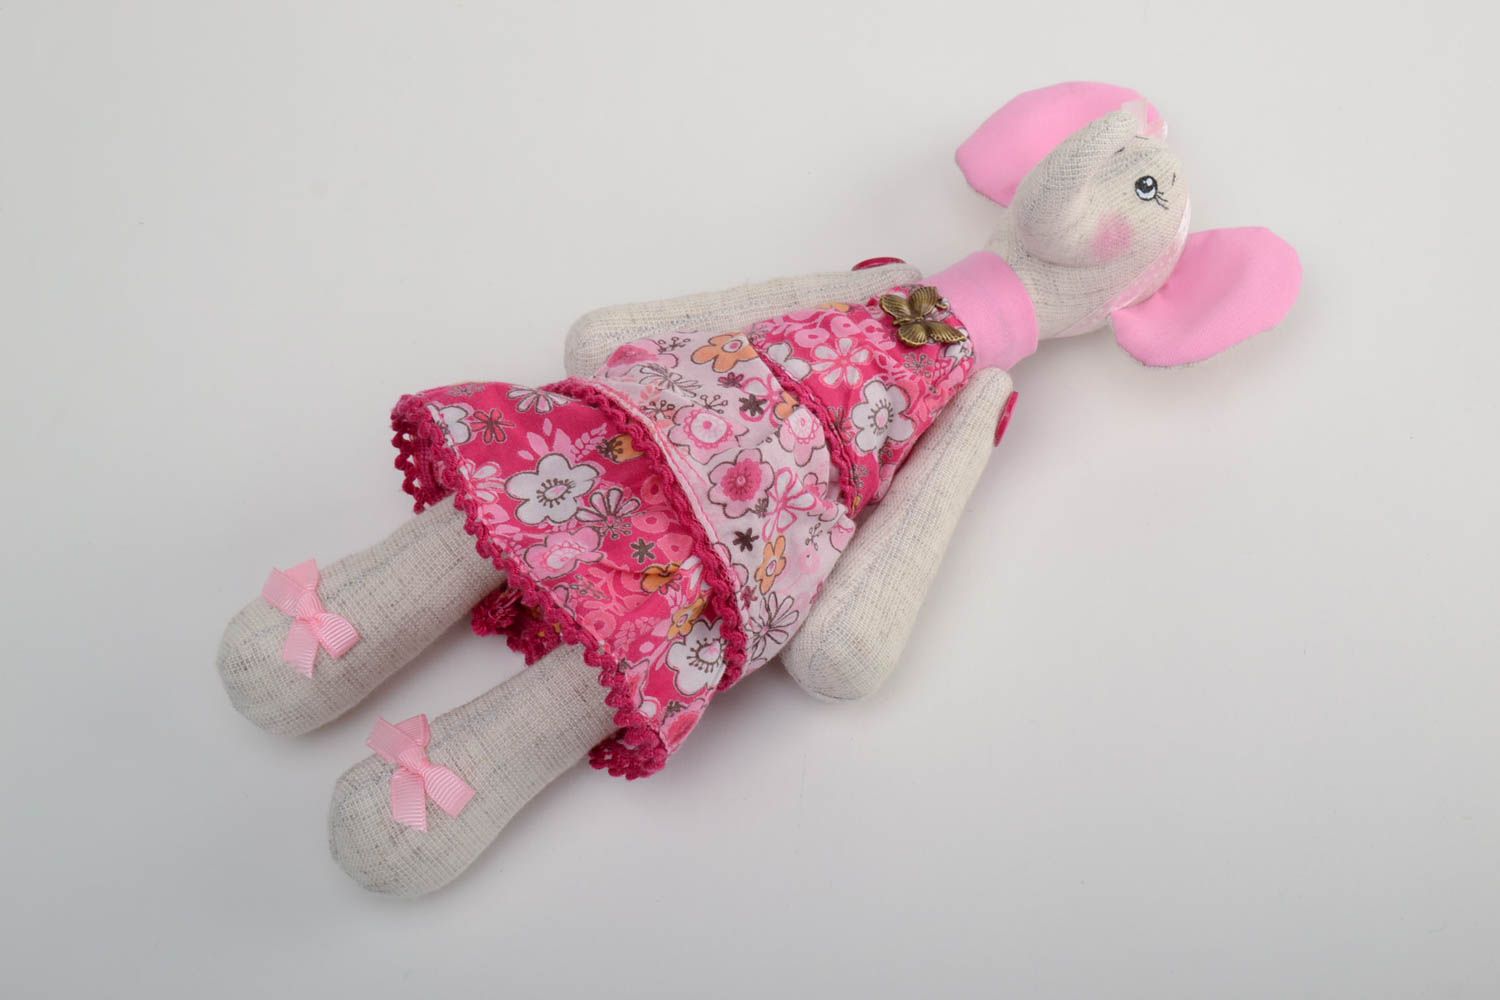 Мягкая игрушка слониха в платье тканевая кукла из льна для девочки хенд мэйд фото 2